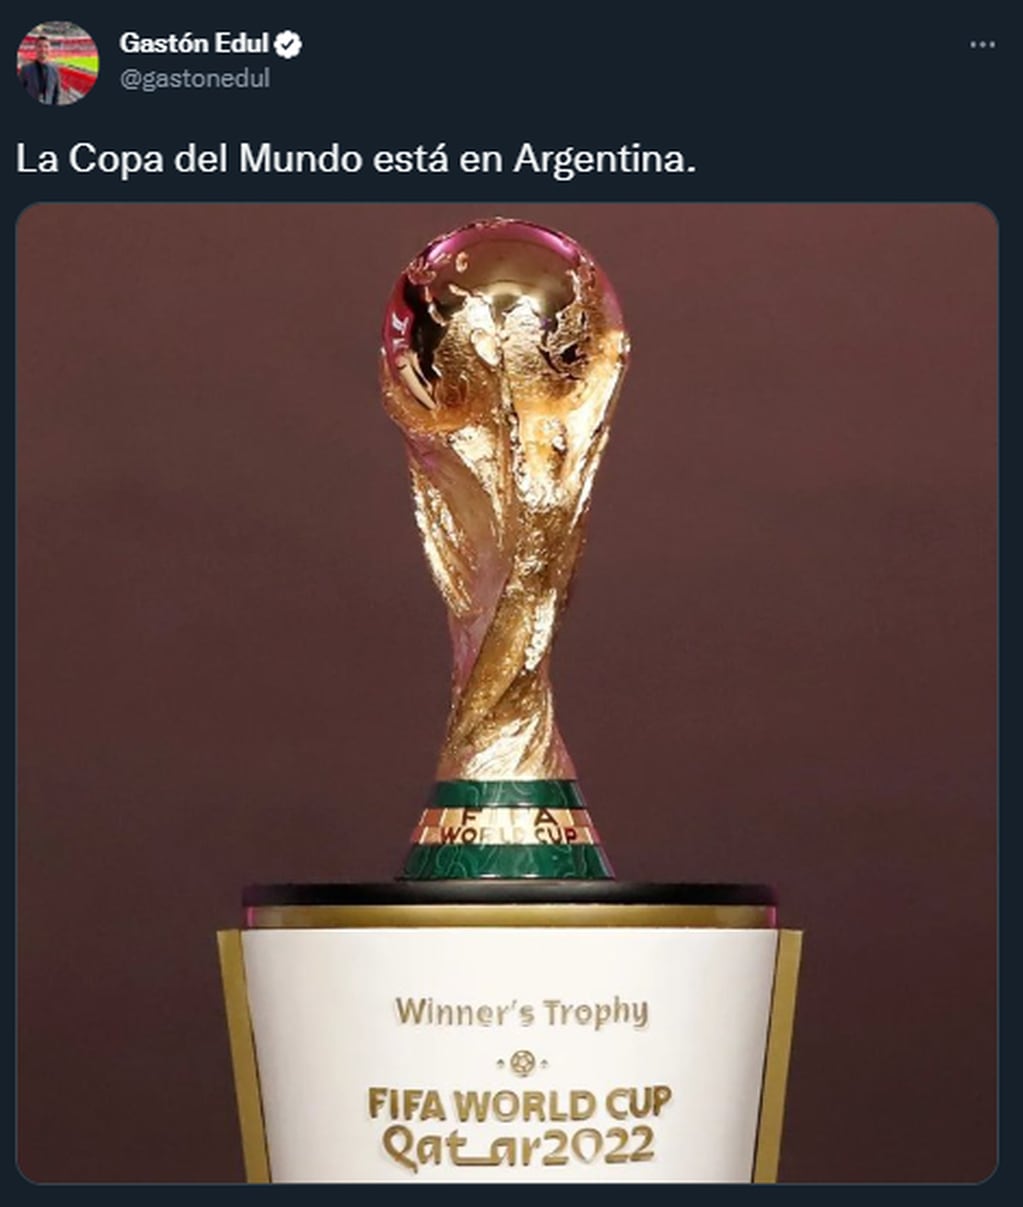 La Copa del Mundo se encuentra en Argentina